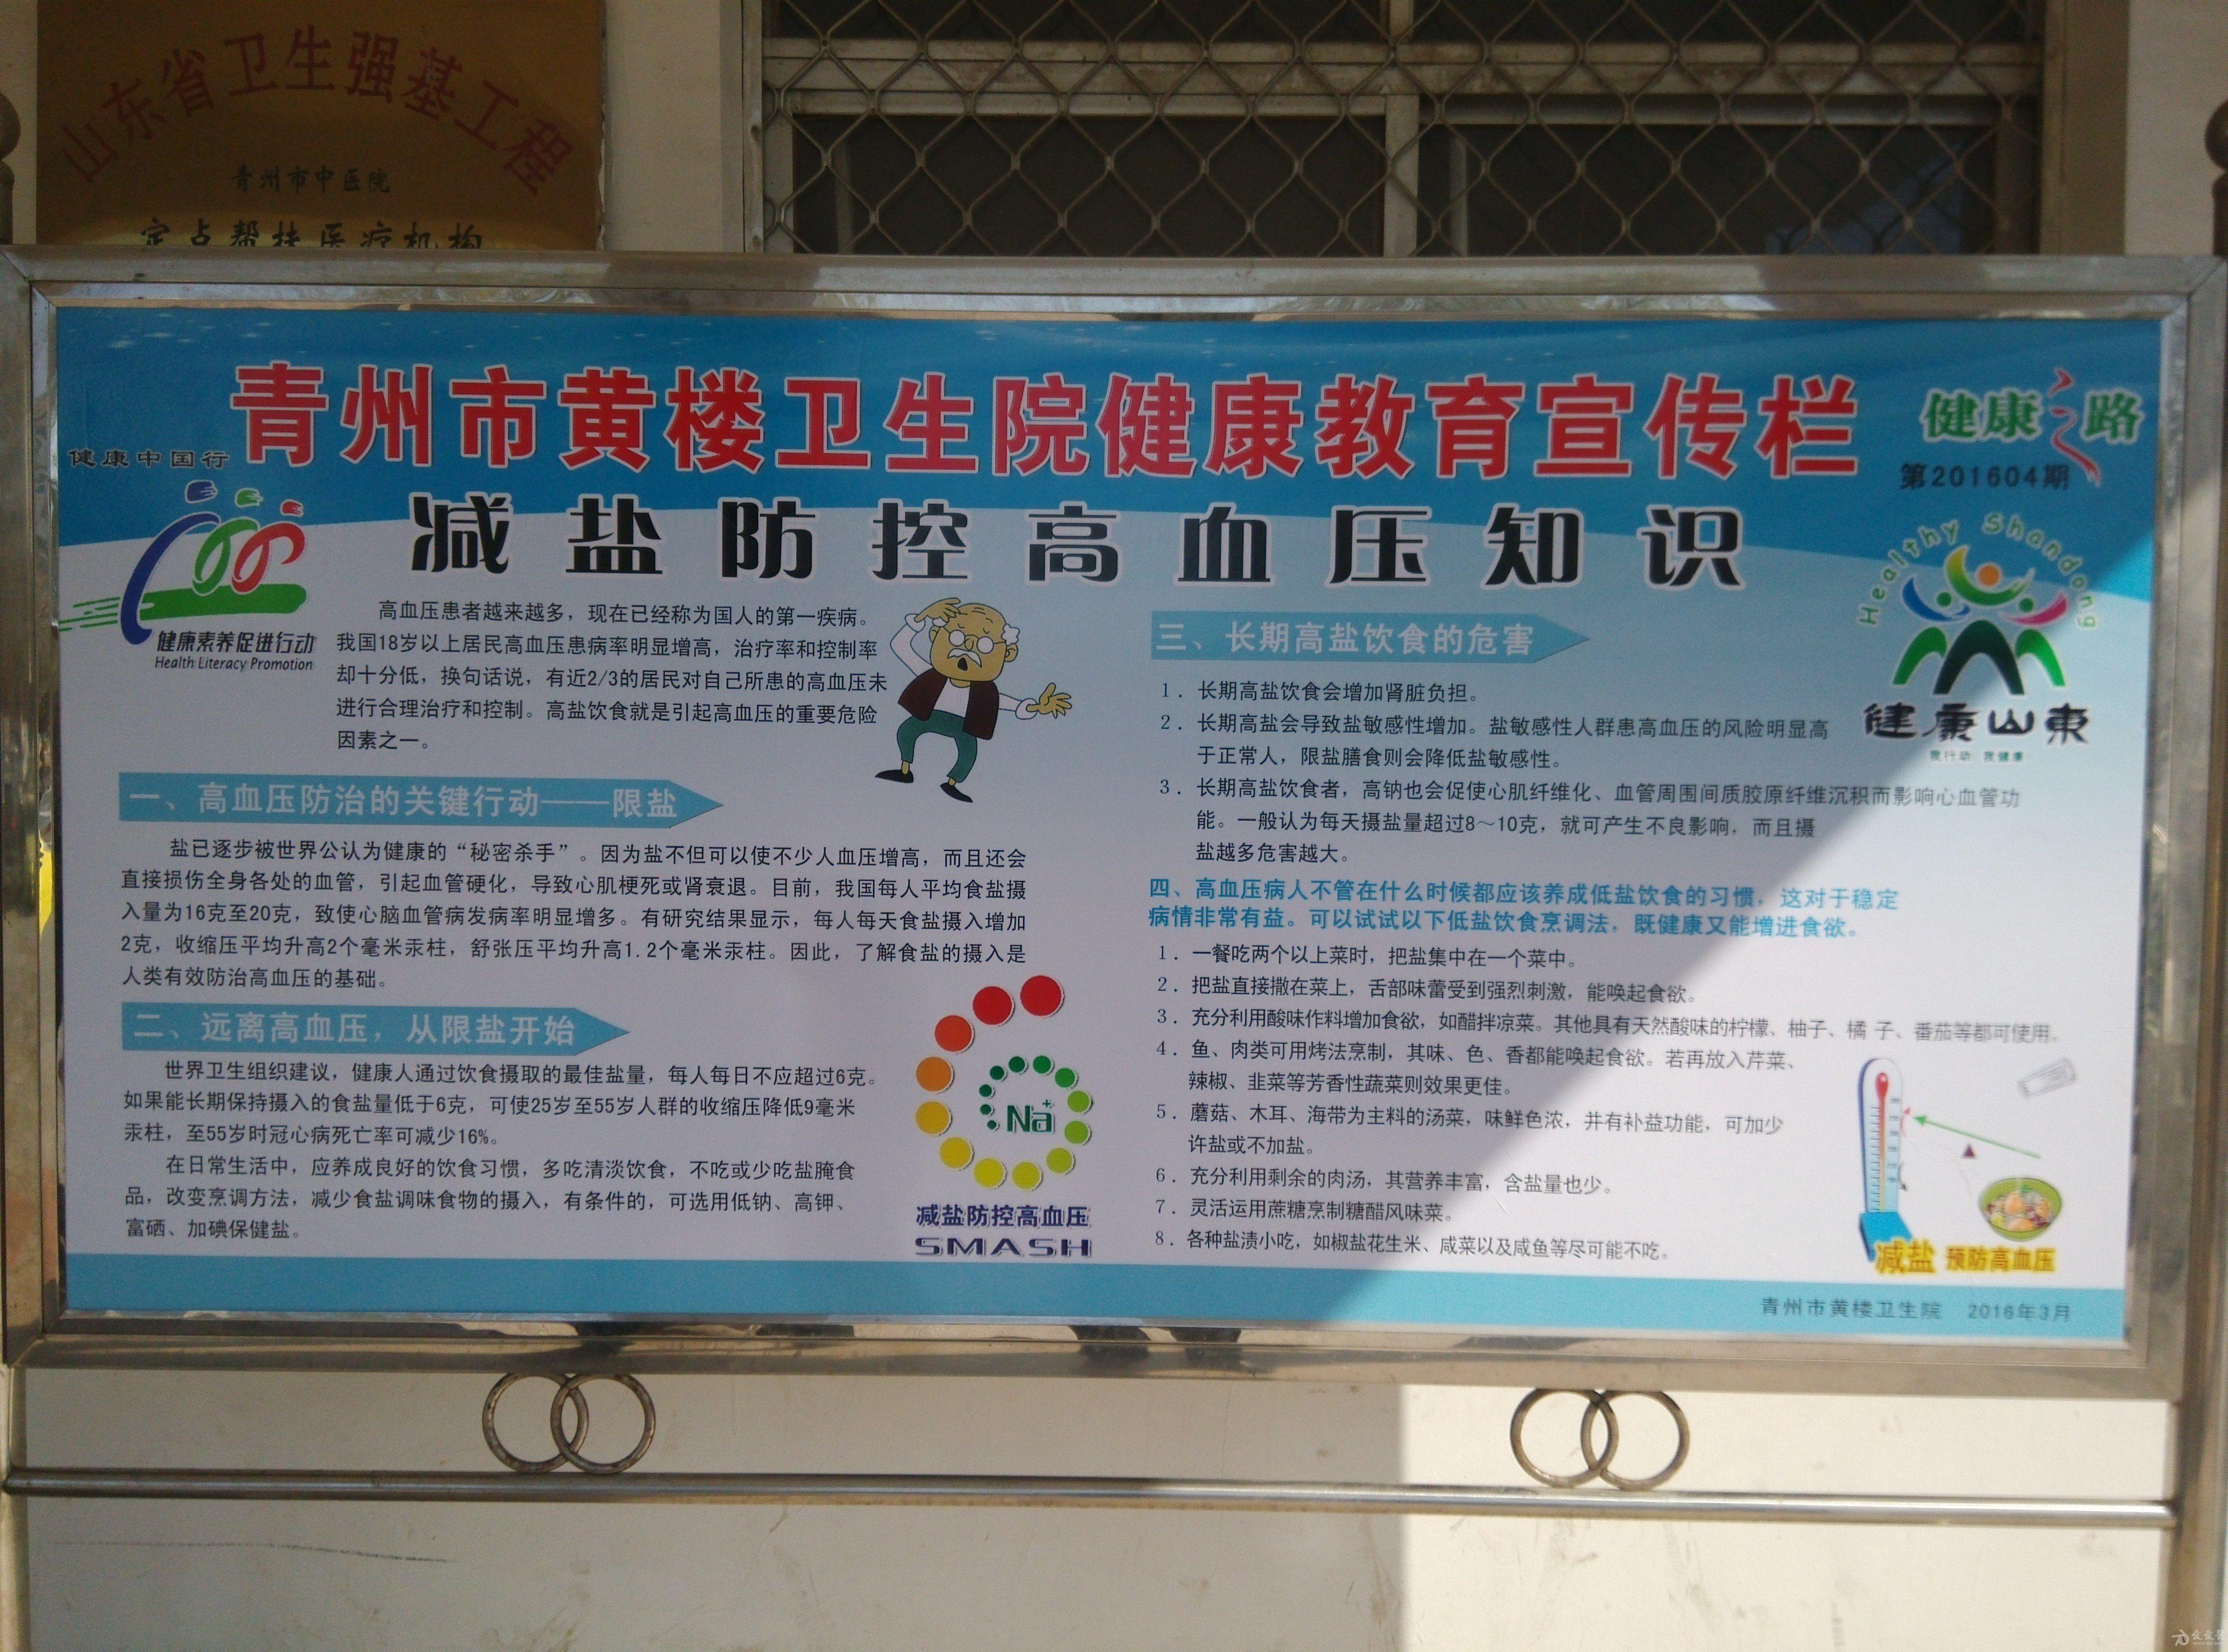 青州市黄楼卫生院健康教育宣传栏第四期2016年